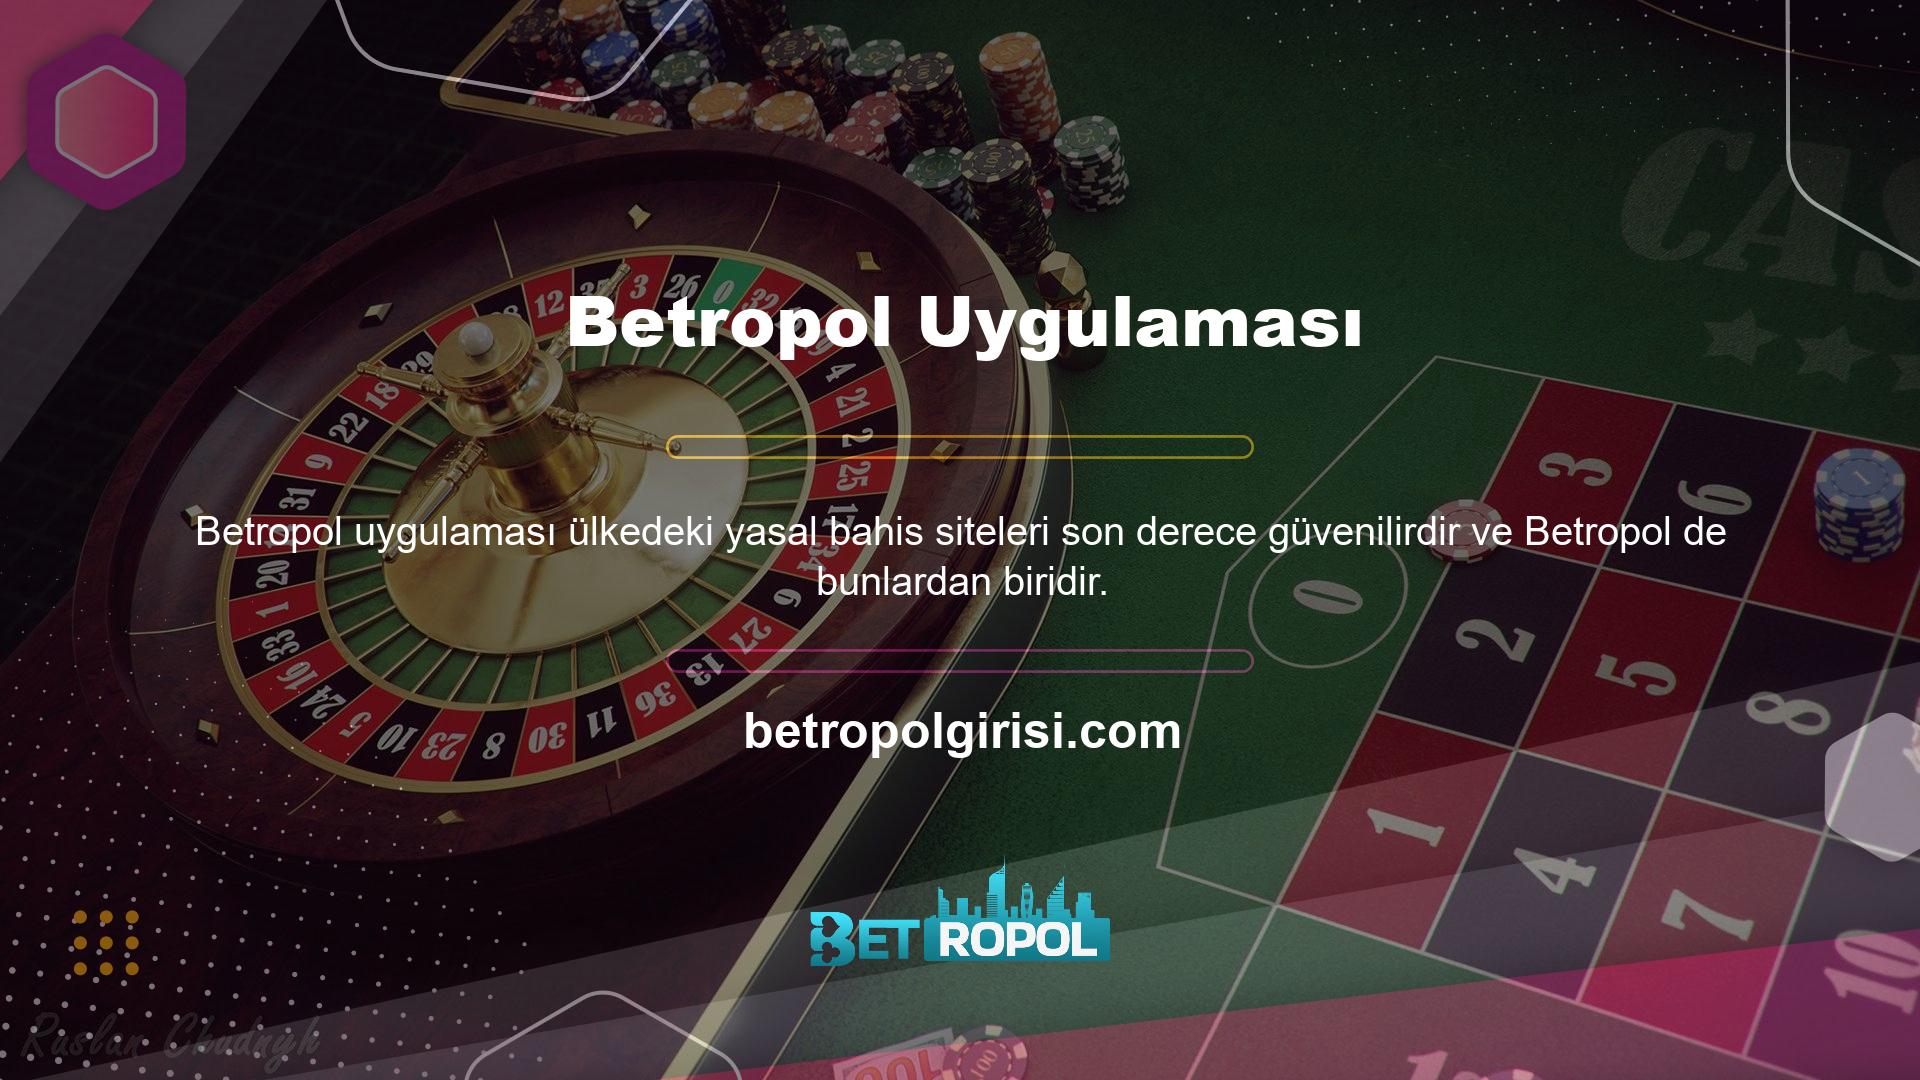 Betropol, Türk halkının sevdiği ve slot makinelerine güçlü bir ilgi duyan firmalardan biridir